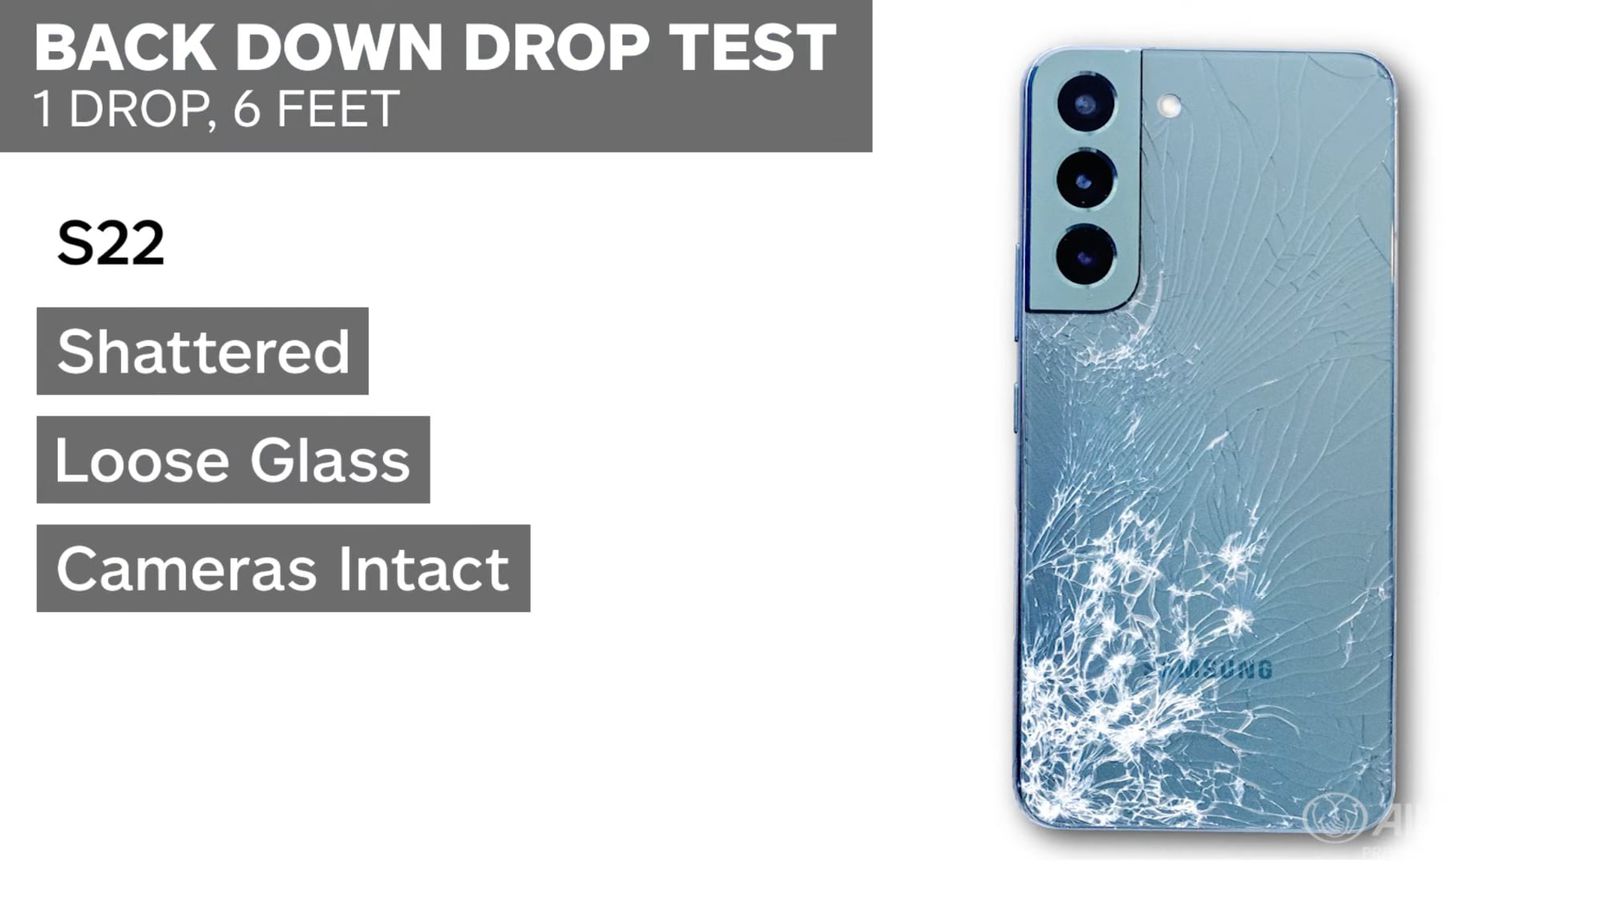 Samsung Galaxy S22 maggiormente soggetti a danneggiarsi rispetto a iPhone 13 nei drop test